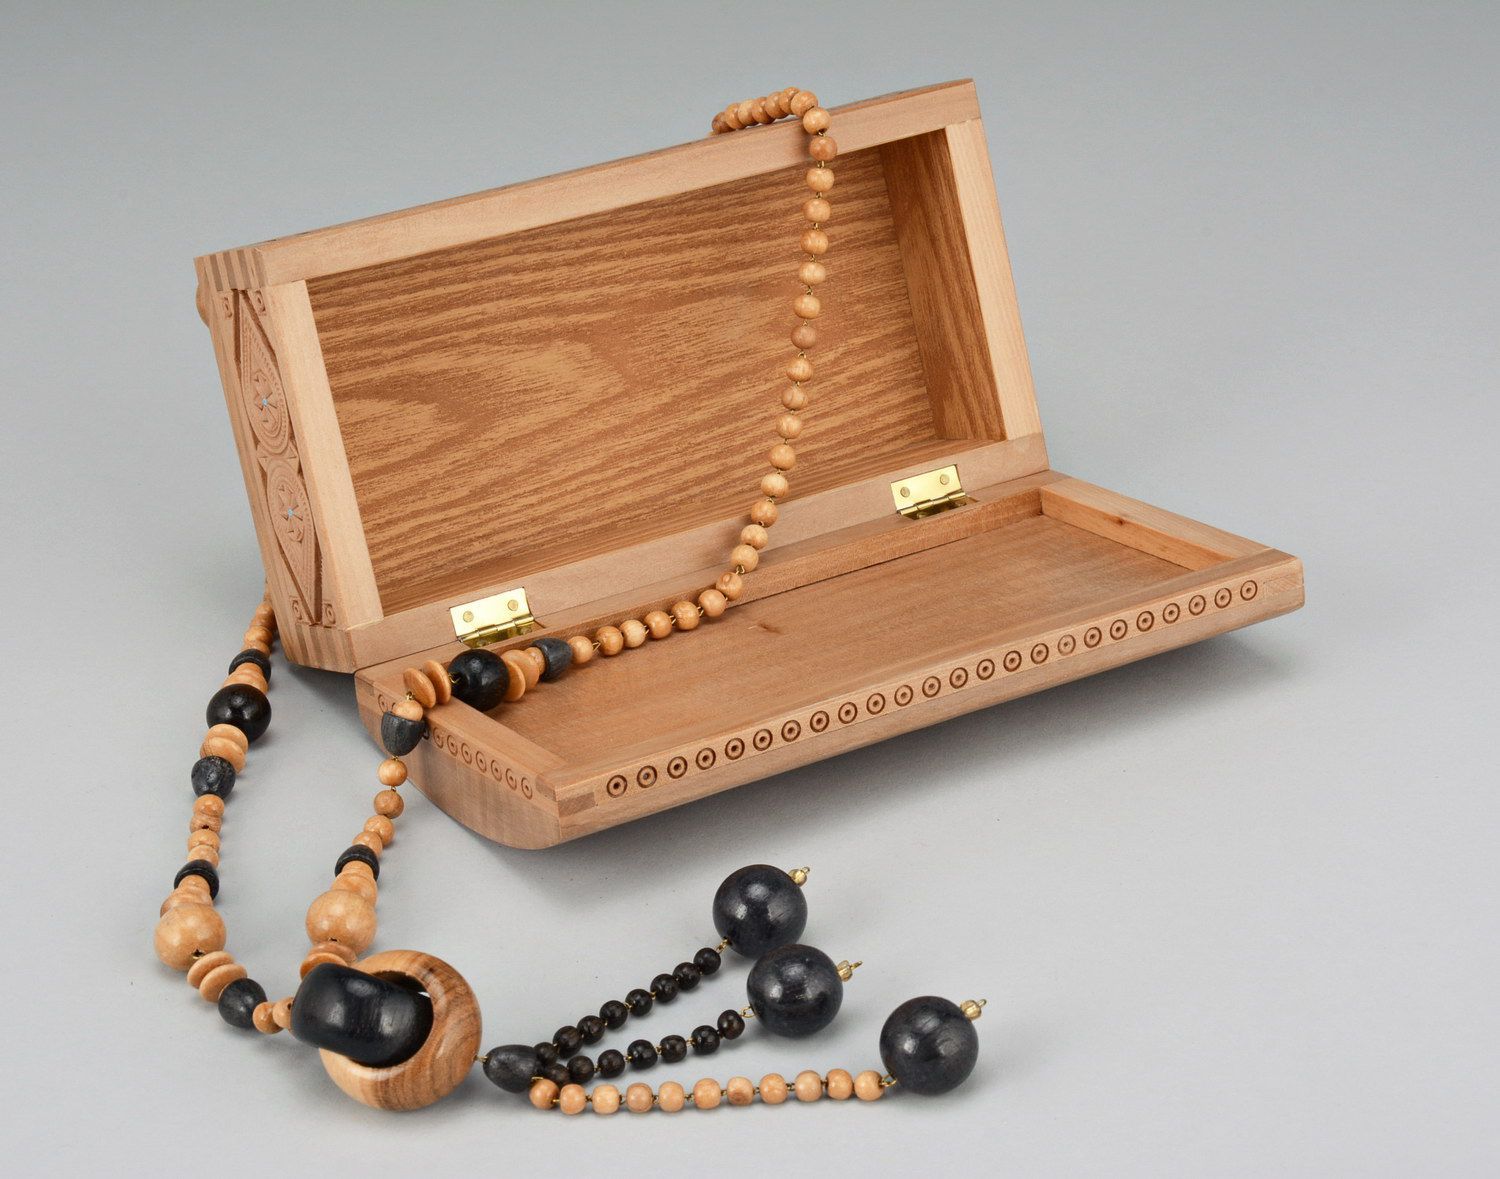 Handmade wooden beads photo 3